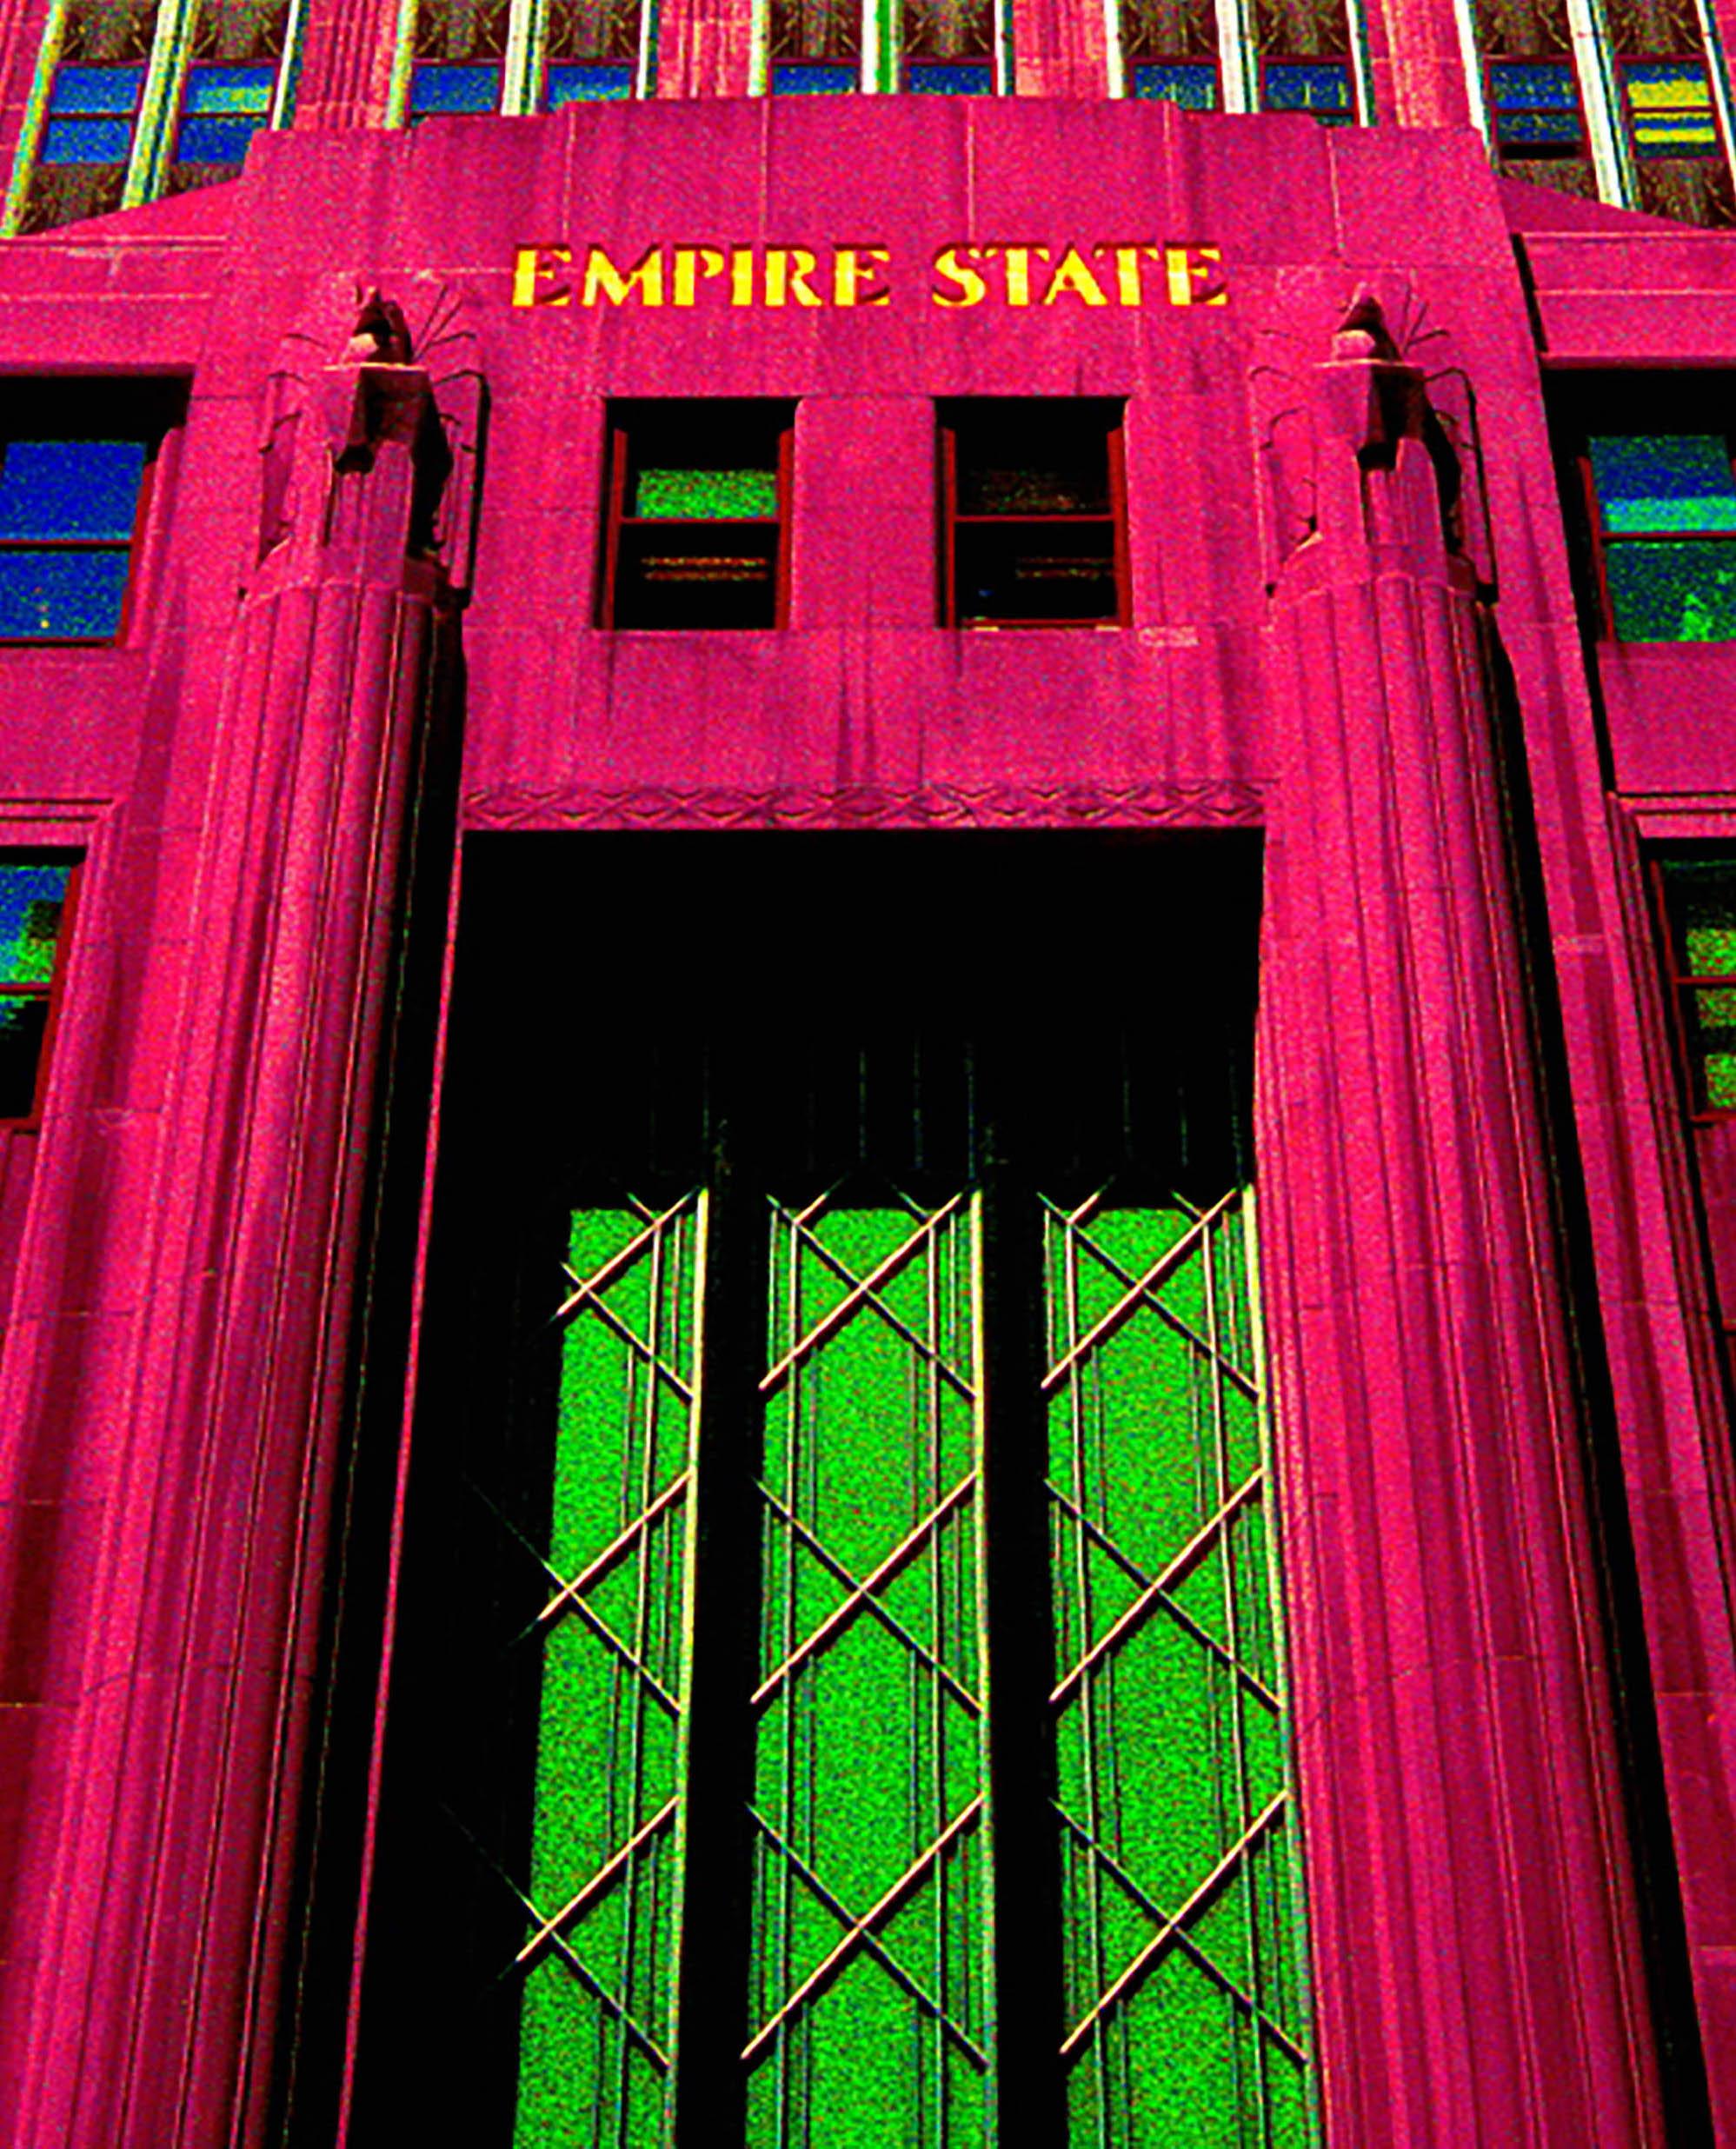 Francis APESTÉGUY - Empire State
2007 
Format A2 (40x60cm)  
Impression numérique à partir d'une photo originale prise par l'artiste, jet d'encre sur papier baryté.  
Signé et numéroté sur 9 exemplaires  
Boîte  
350 euros 